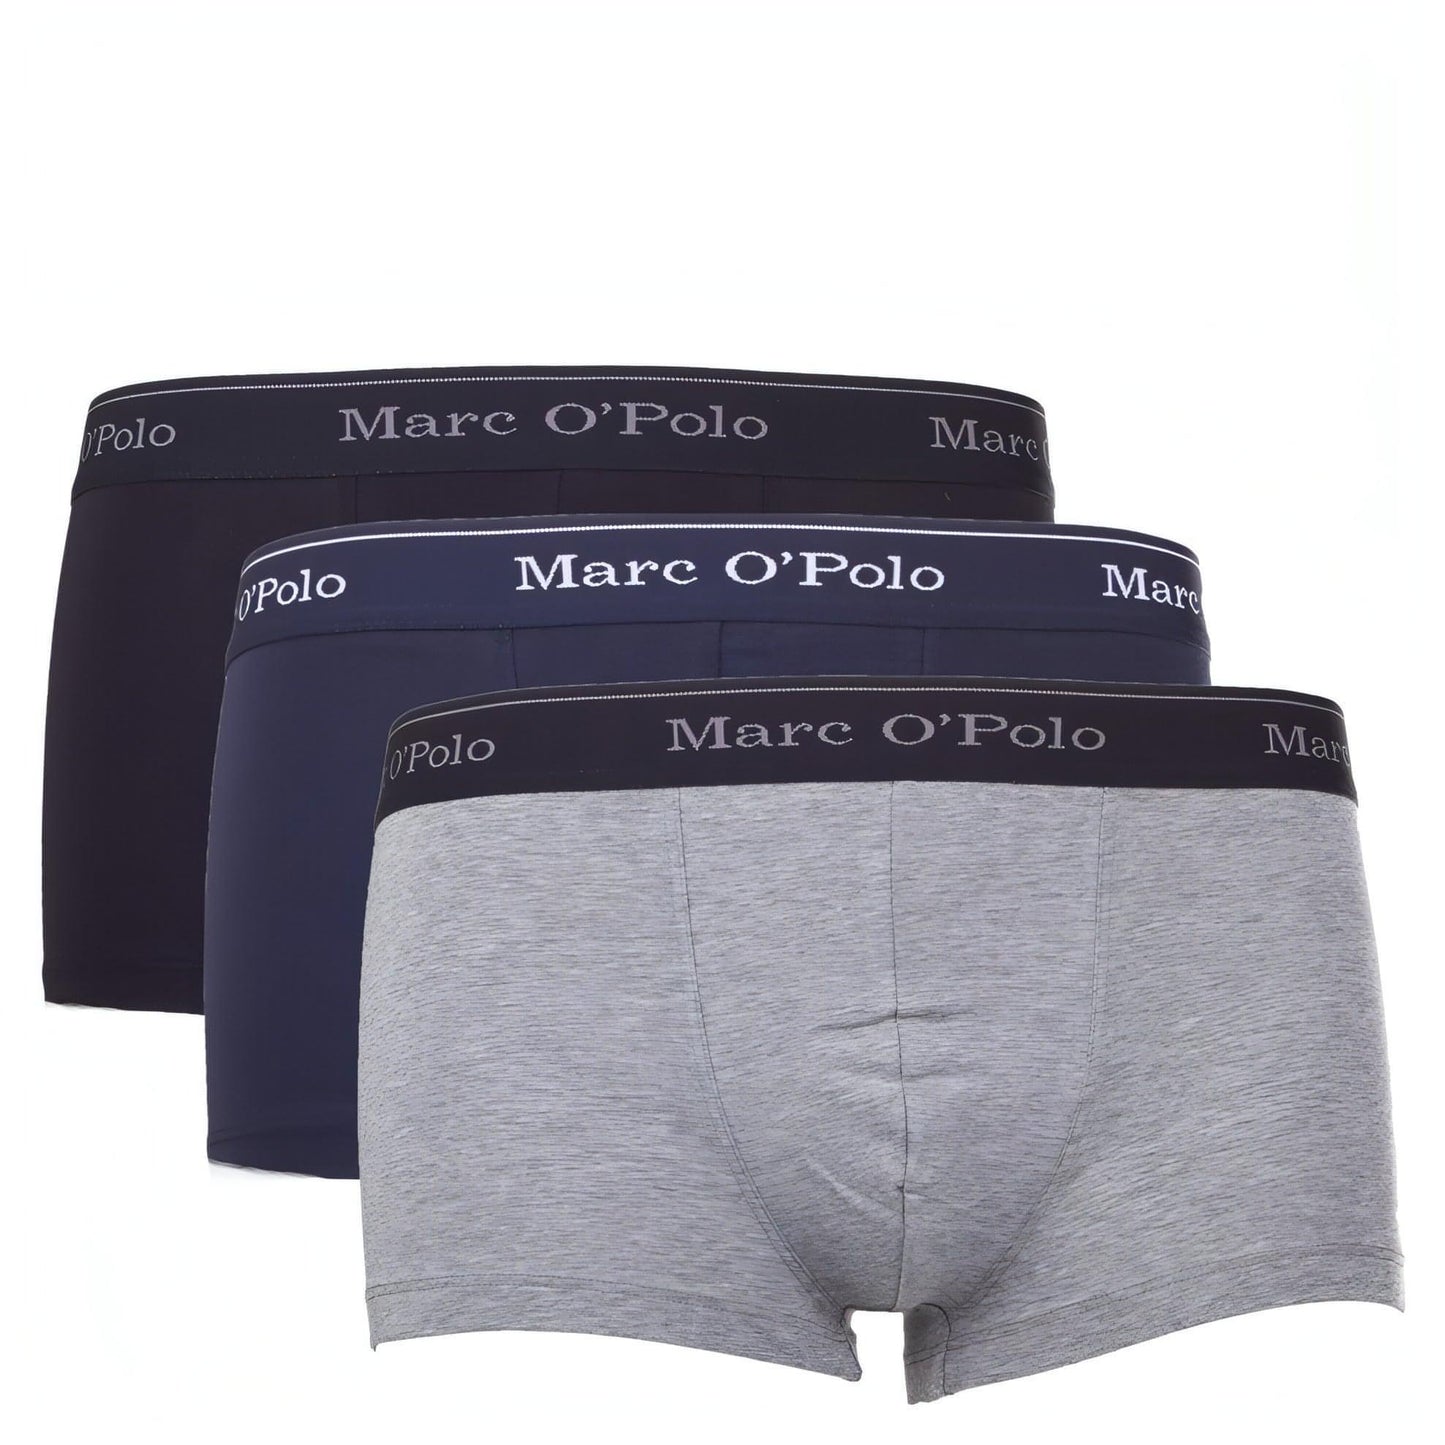 MARC O'POLO įvairių spalvų vyriški apatiniai, 3 vnt.